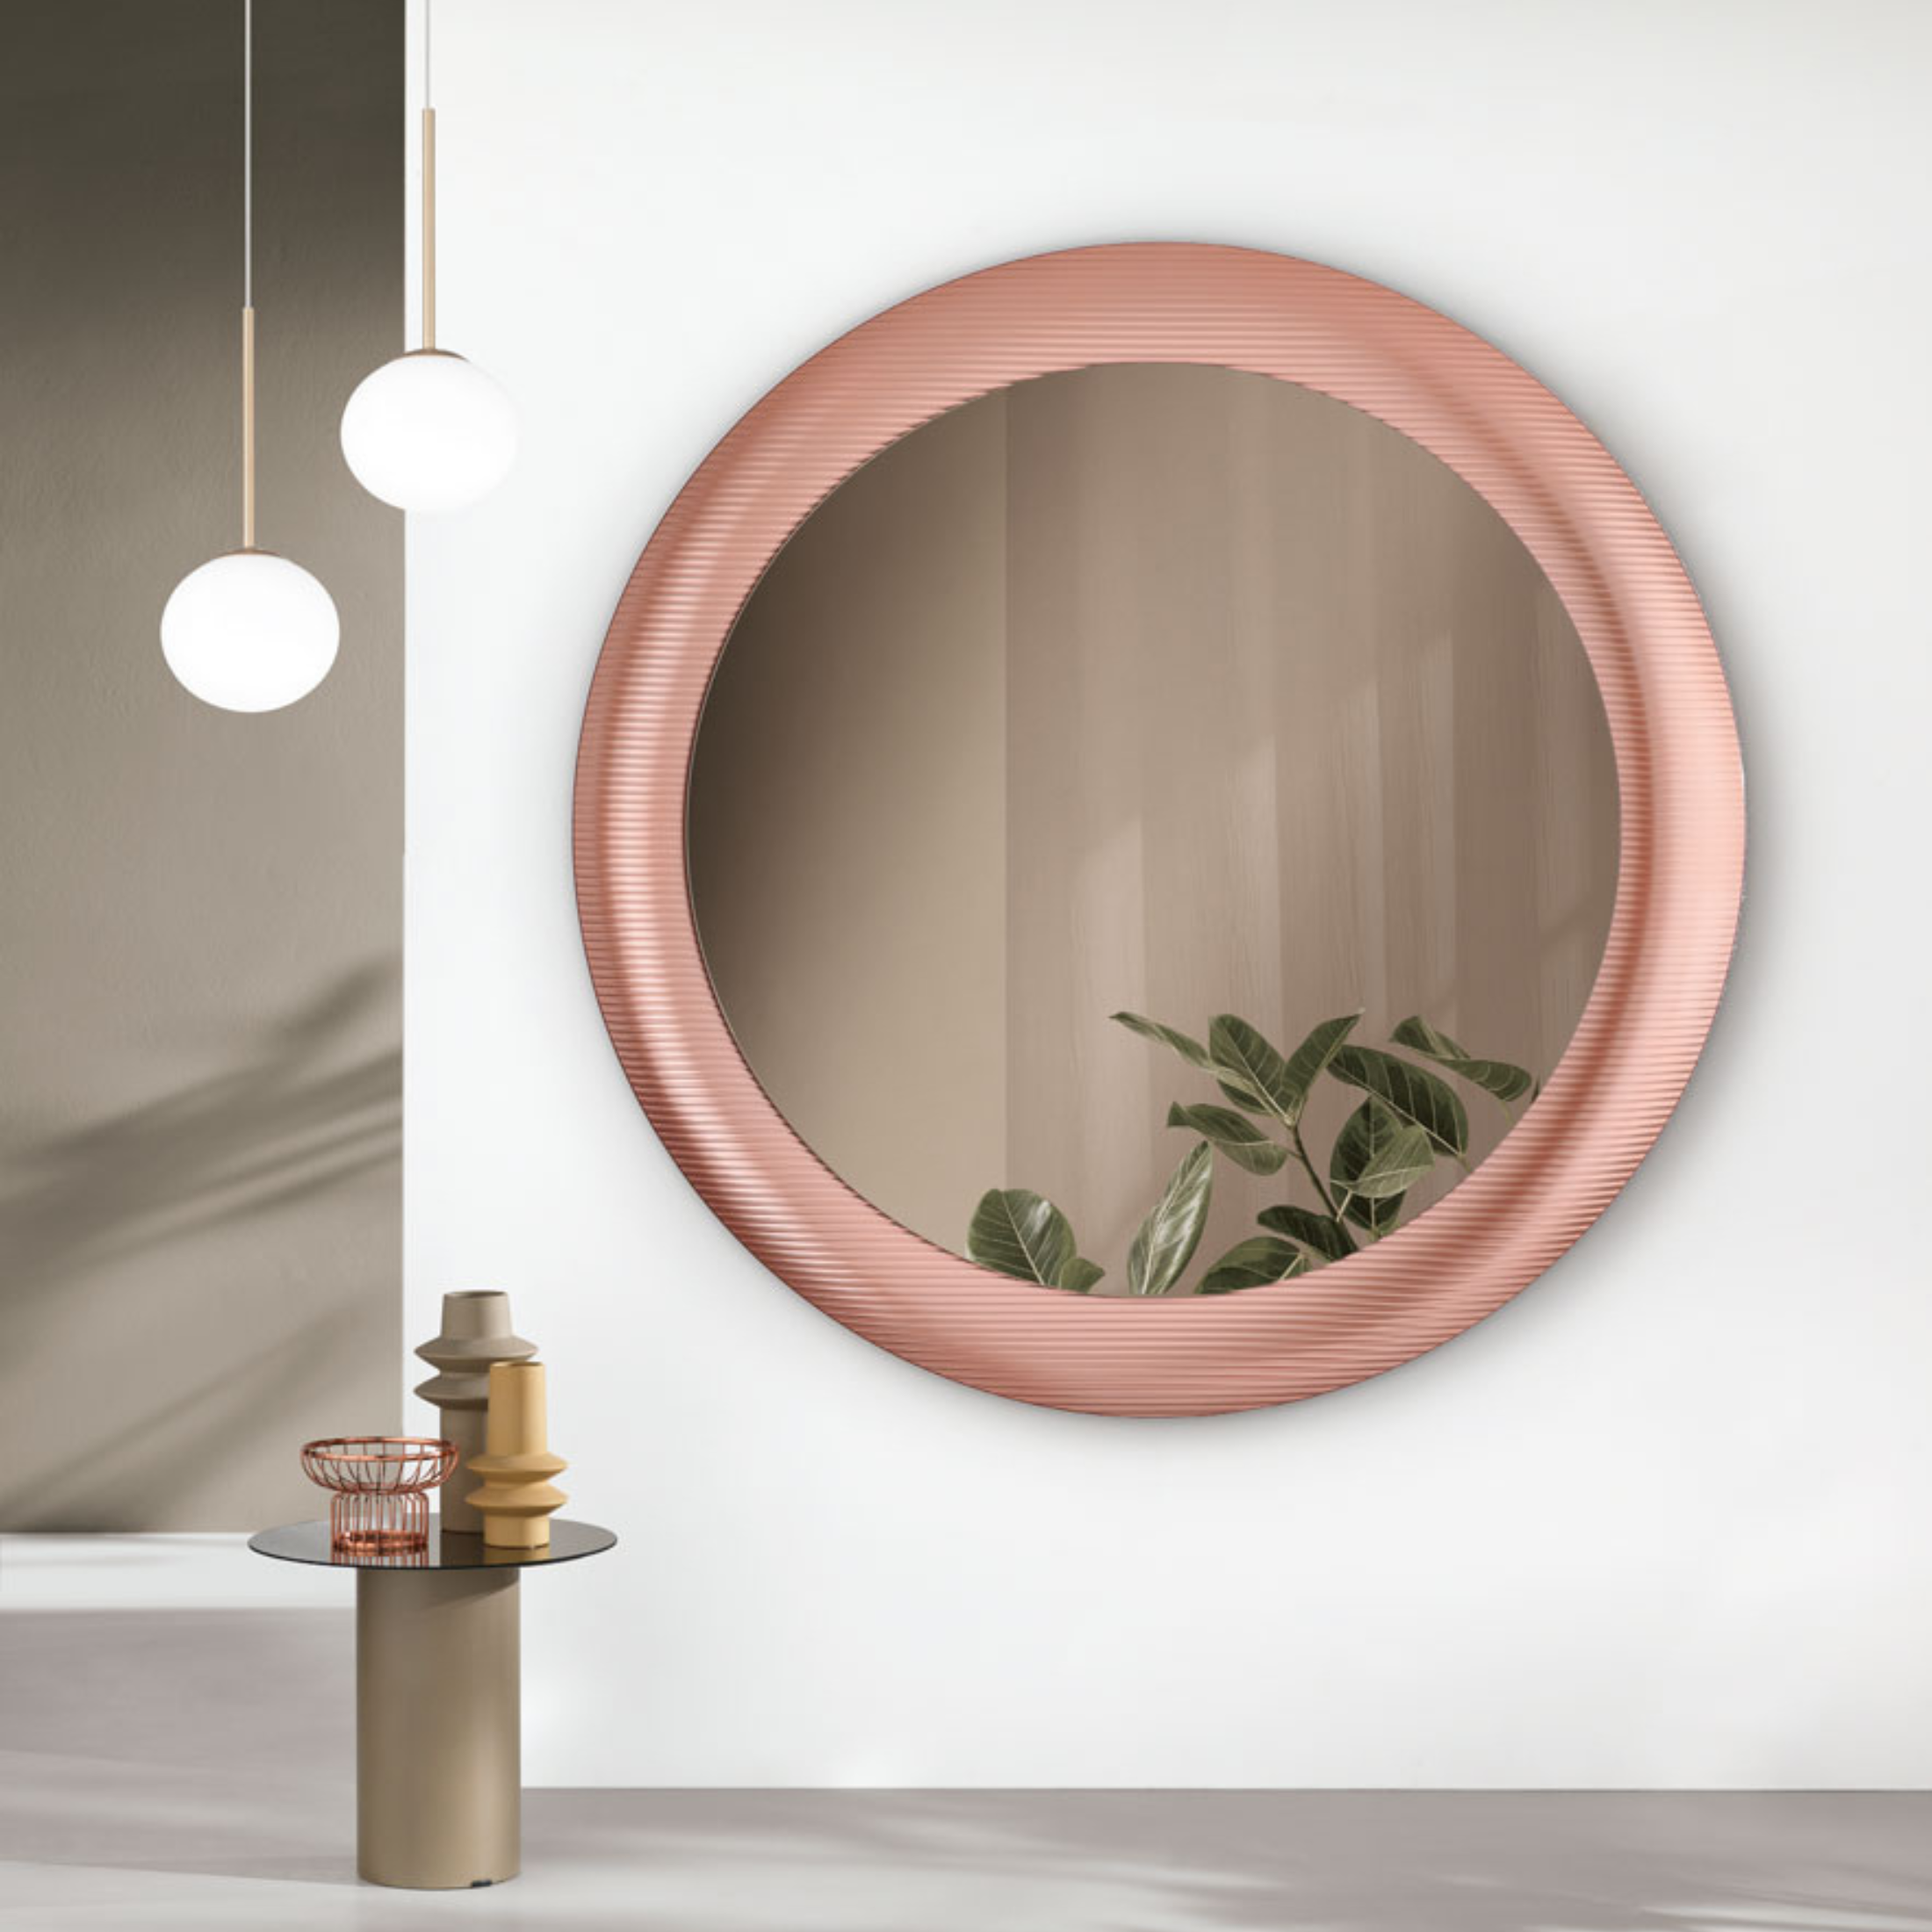 Specchio da parete "Enea" moderno con maxi cornice cannettata